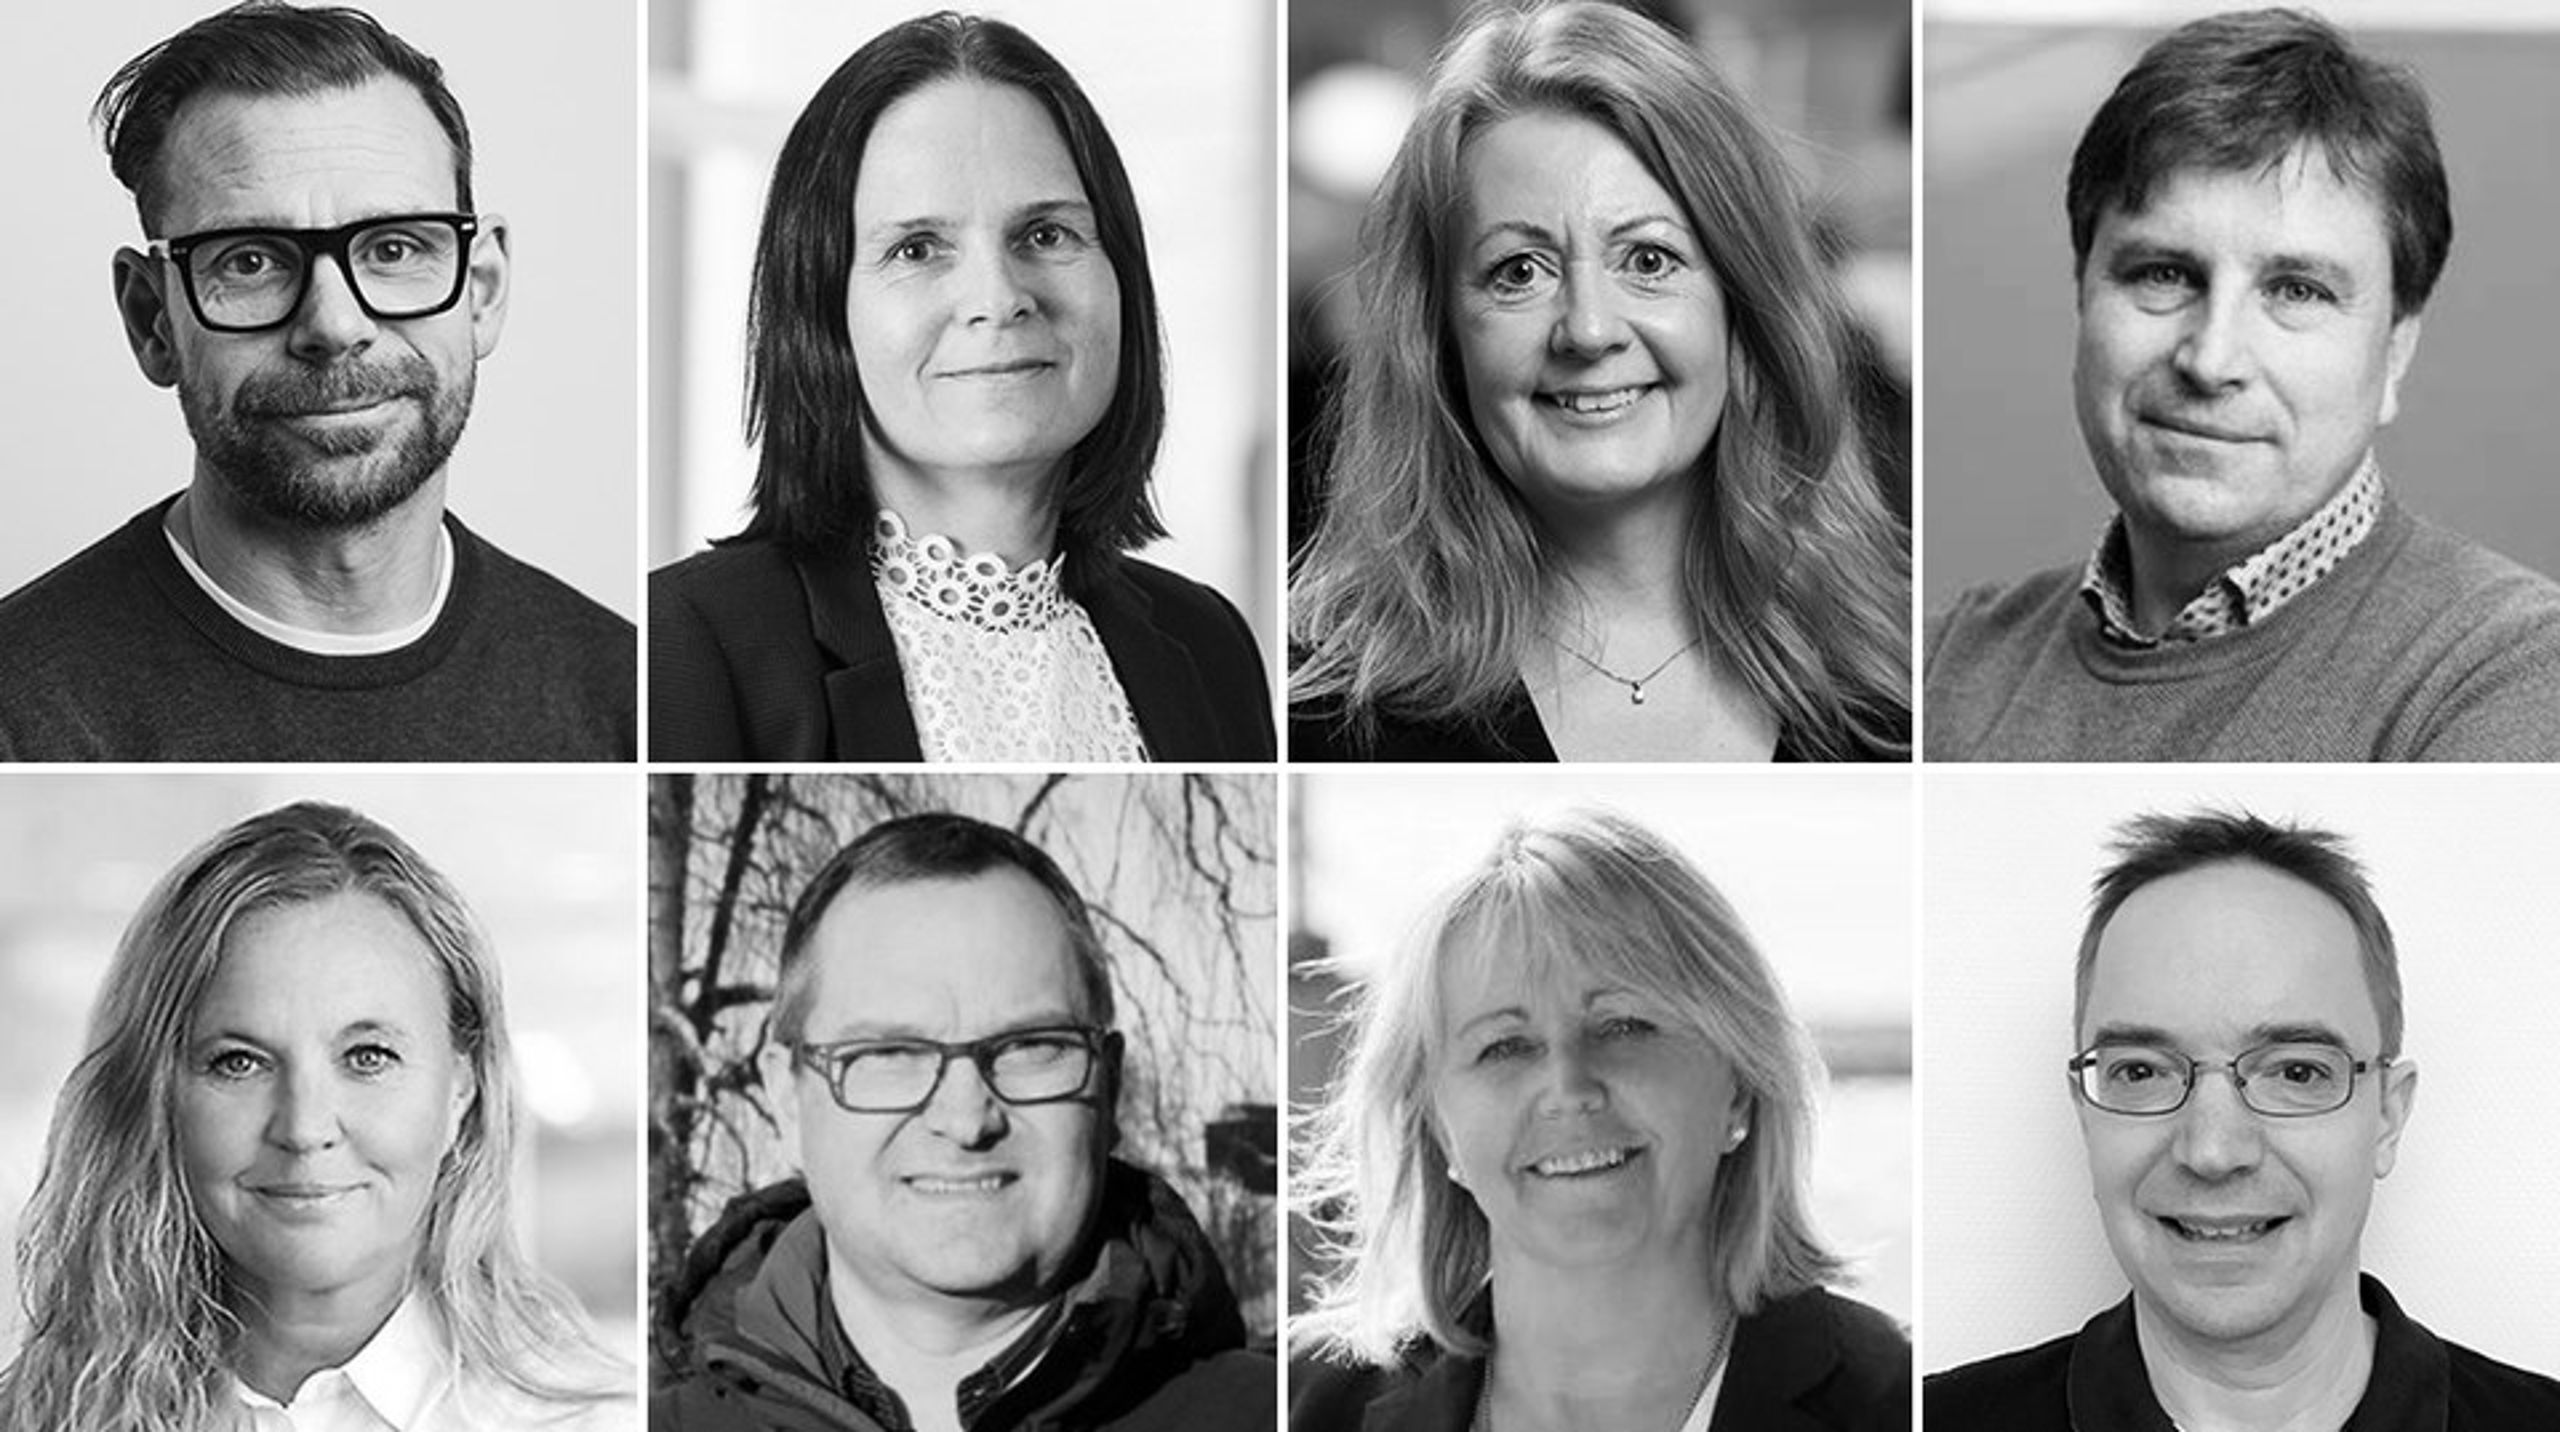 Sveriges allmännytta tillsätter åtta nya ledamöter till vd-rådet.&nbsp;